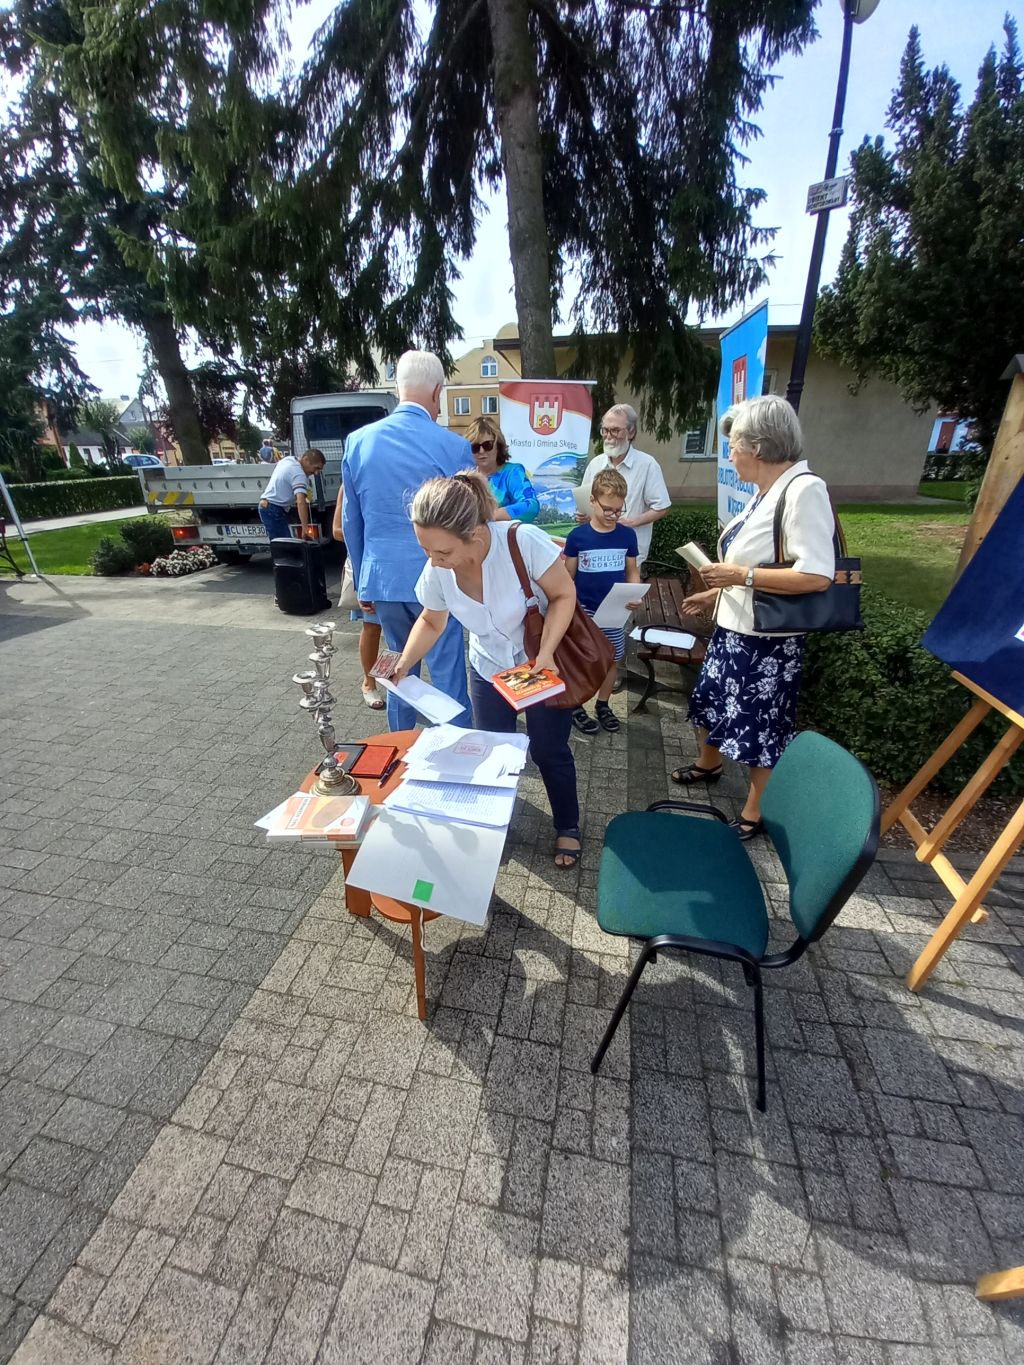 Na zdjęciu widać uczestników Narodowego Czytania pieczętujących na skwerku na stoliku pieczęcią przyniesione książki